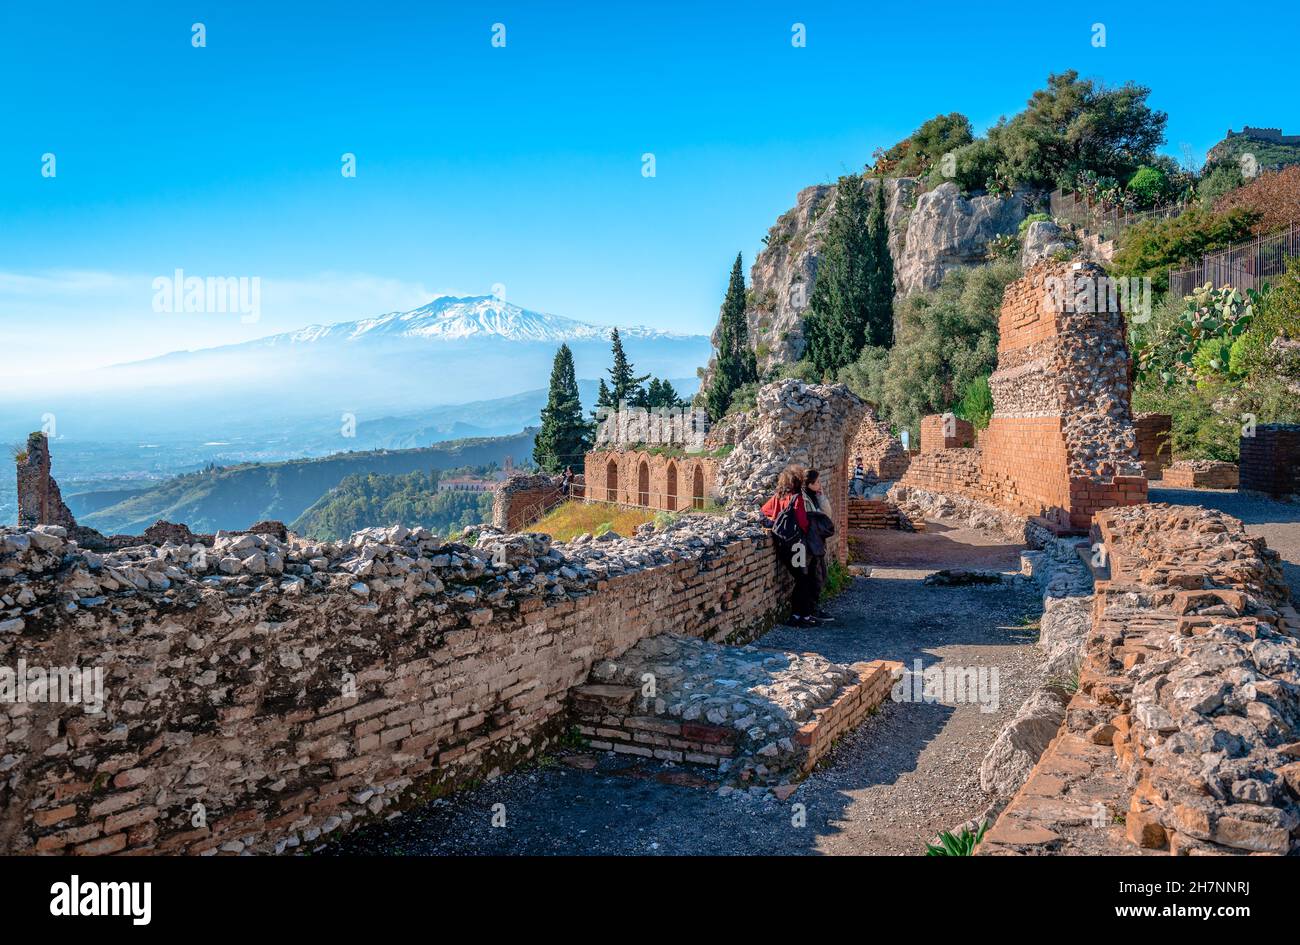 Via Teatro Greko, el antiguo callejón que conduce al Teatro Griego Antiguo. El fugoso monte Etna está en el fondo. Sicilia, Italia. Foto de stock